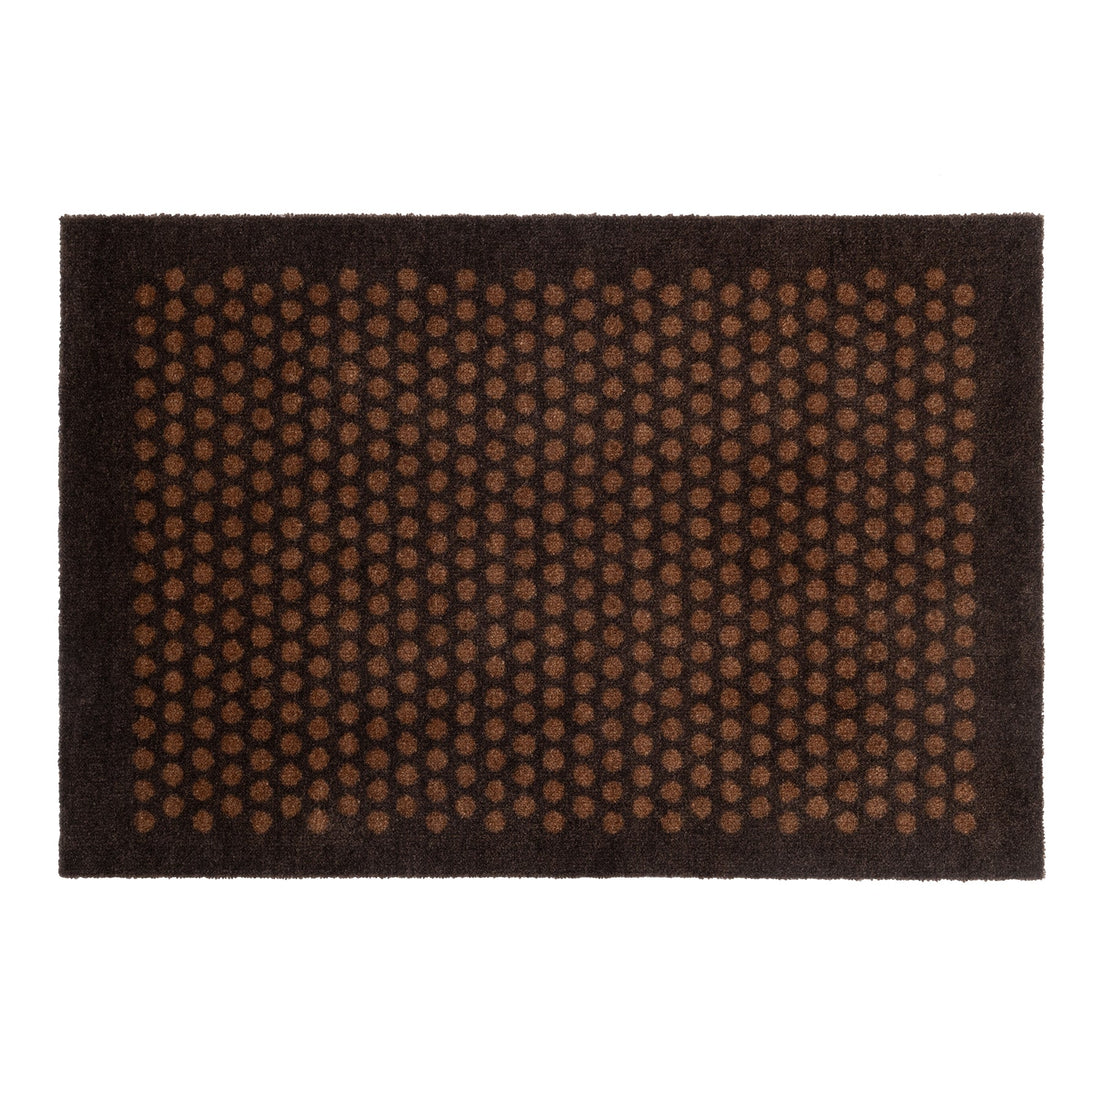 Nachrichten - Teppich/Muss 60 x 90 cm - Punkt/Cognac -Dark Brown